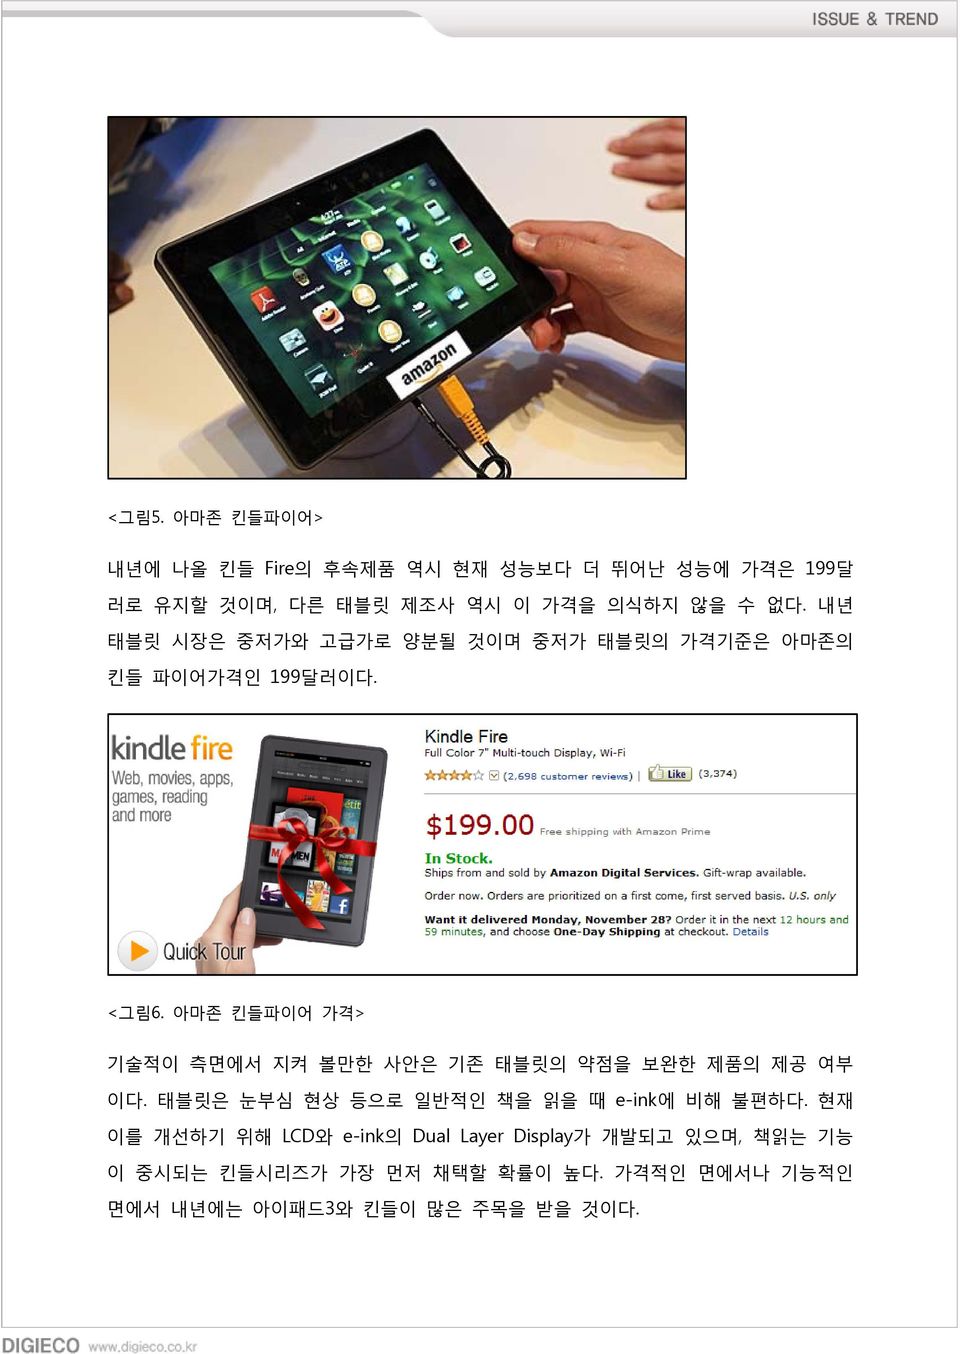 아마존 킨들파이어 가격> 기술적이 측면에서 지켜 볼만한 사안은 기존 태블릿의 약점을 보완한 제품의 제공 여부 이다. 태블릿은 눈부심 현상 등으로 일반적인 책을 읽을 때 e-ink에 비해 불편하다.